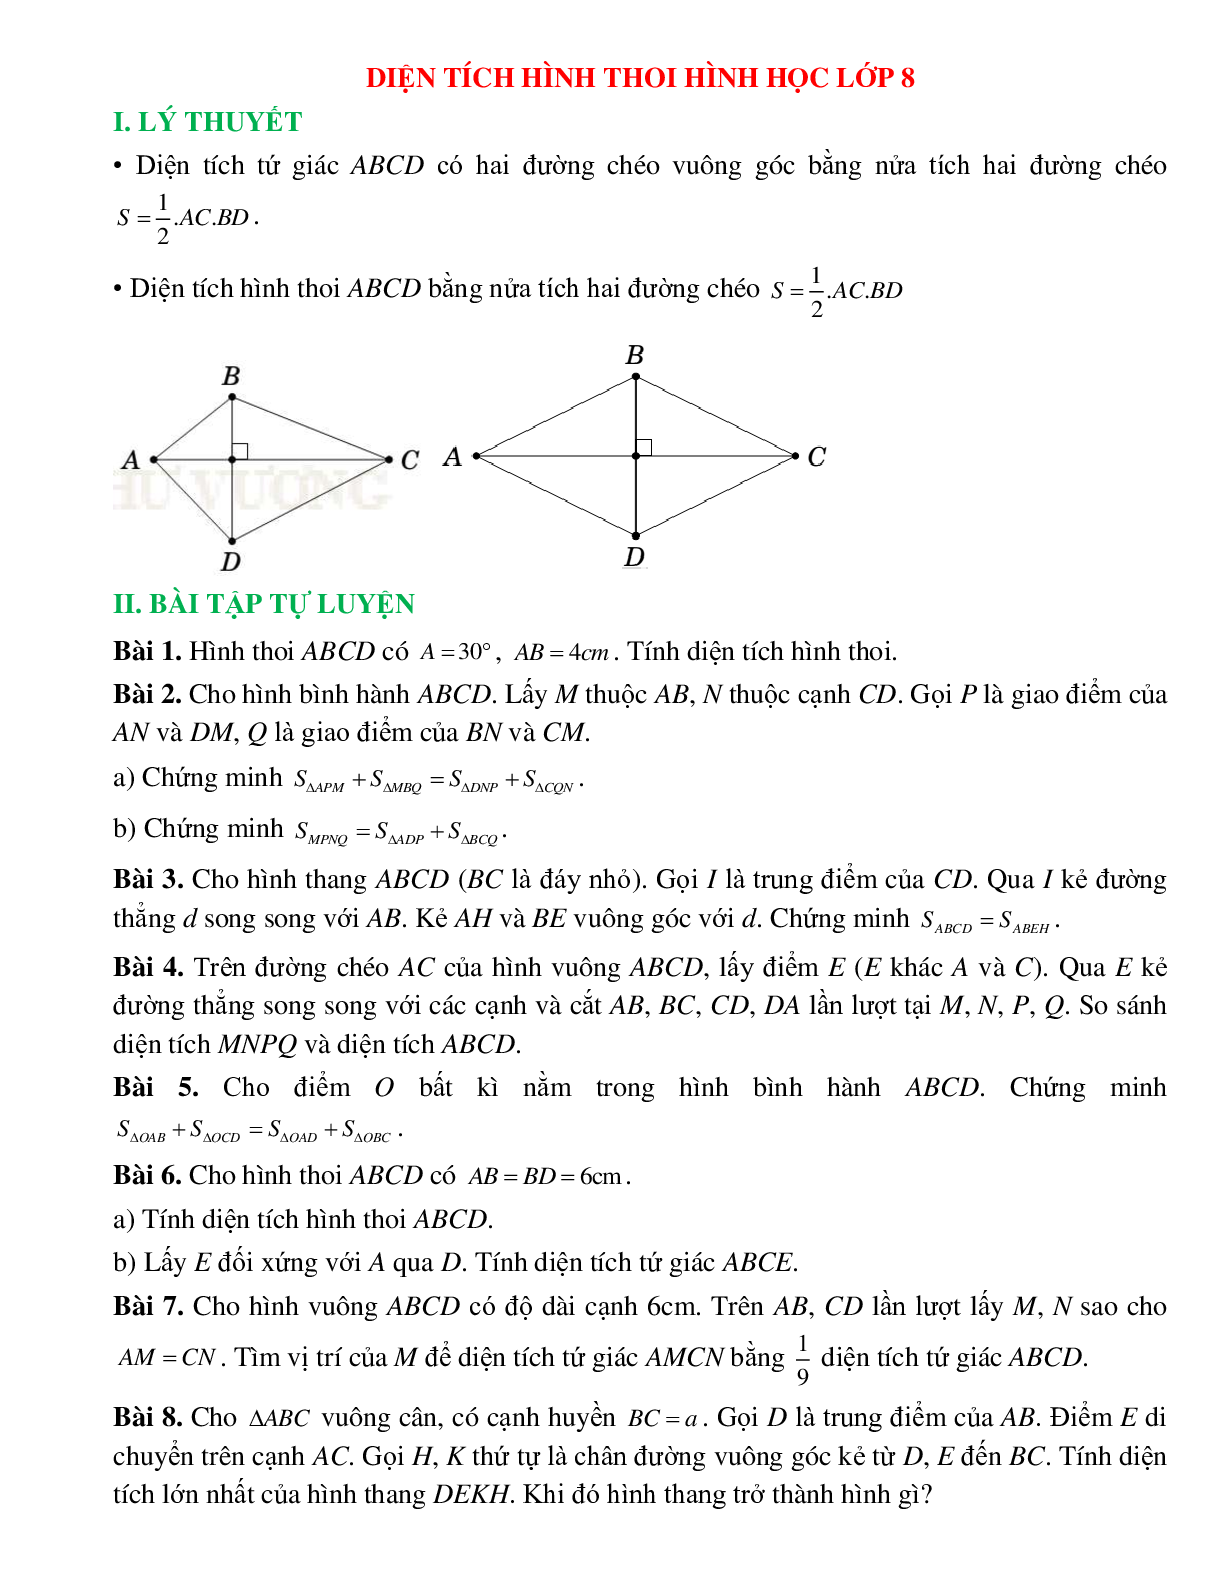 Diện tích hình thoi hình học lớp 8 (trang 1)